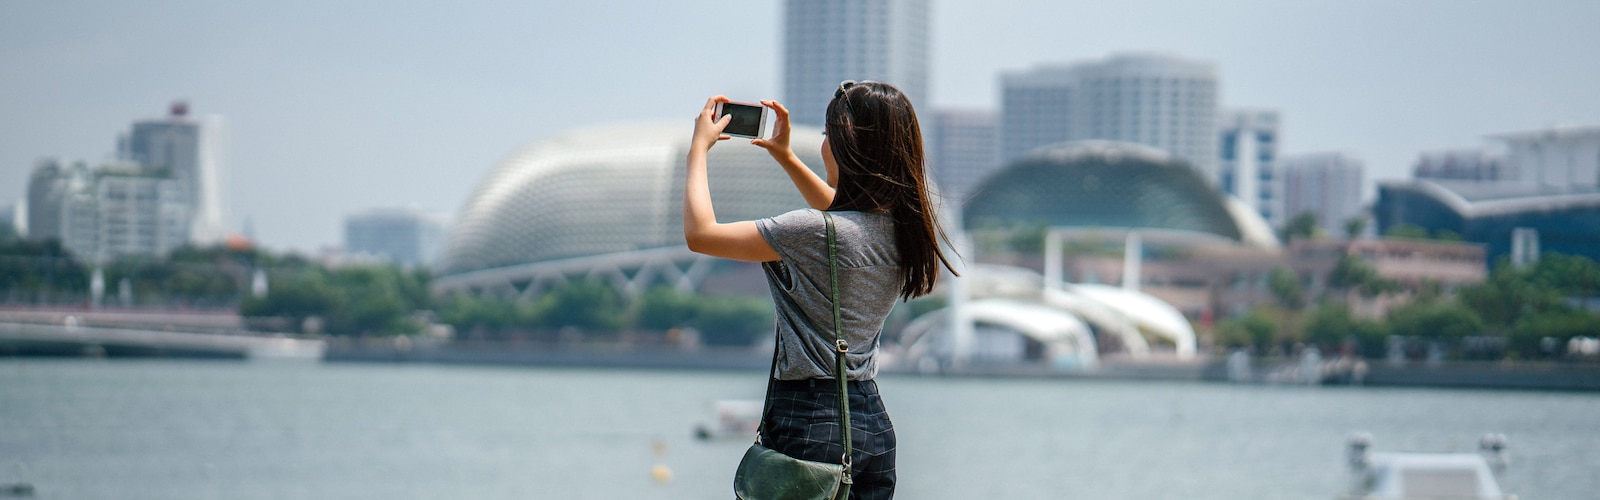 Een vrouw die een foto maakt van een stad met een iPhone